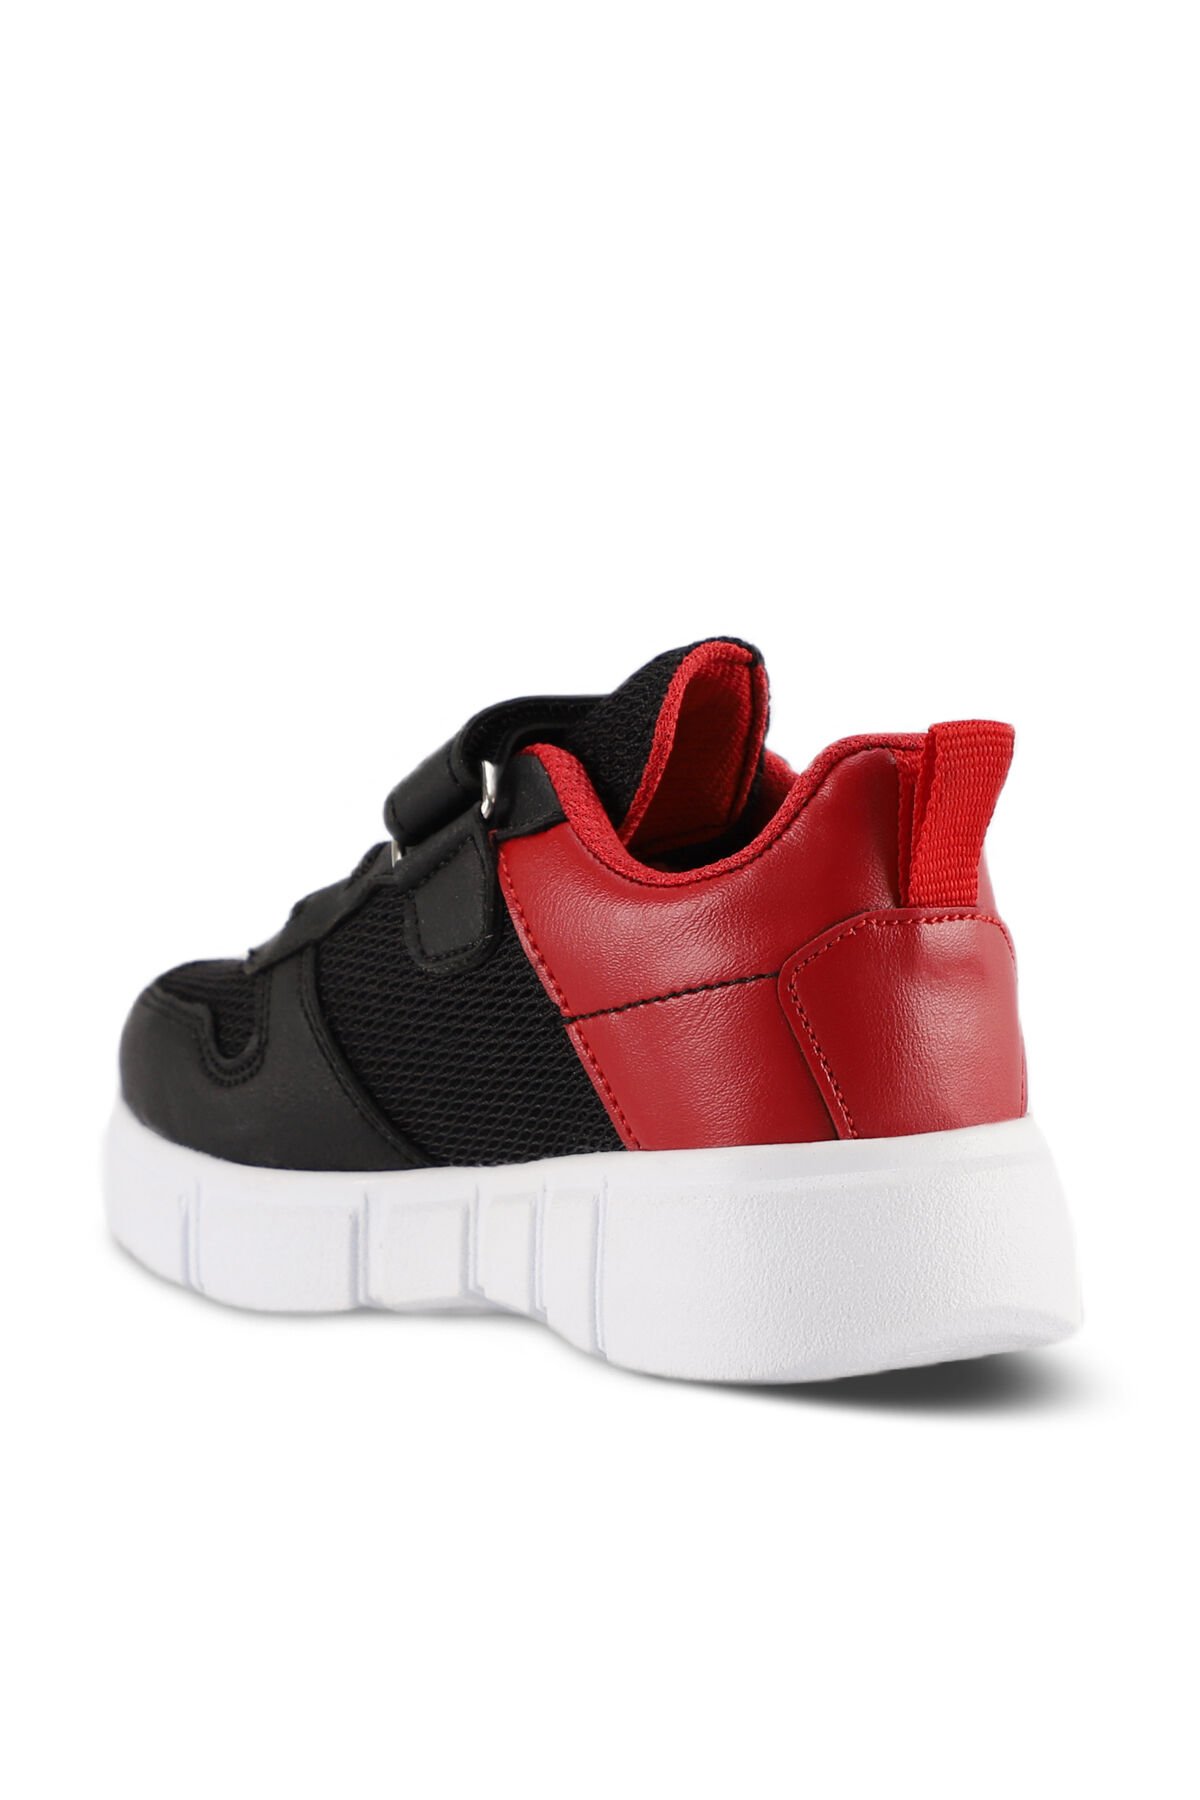 KAVITHA KTN Sneaker Unisex Çocuk Ayakkabı Siyah / Kırmızı - Thumbnail